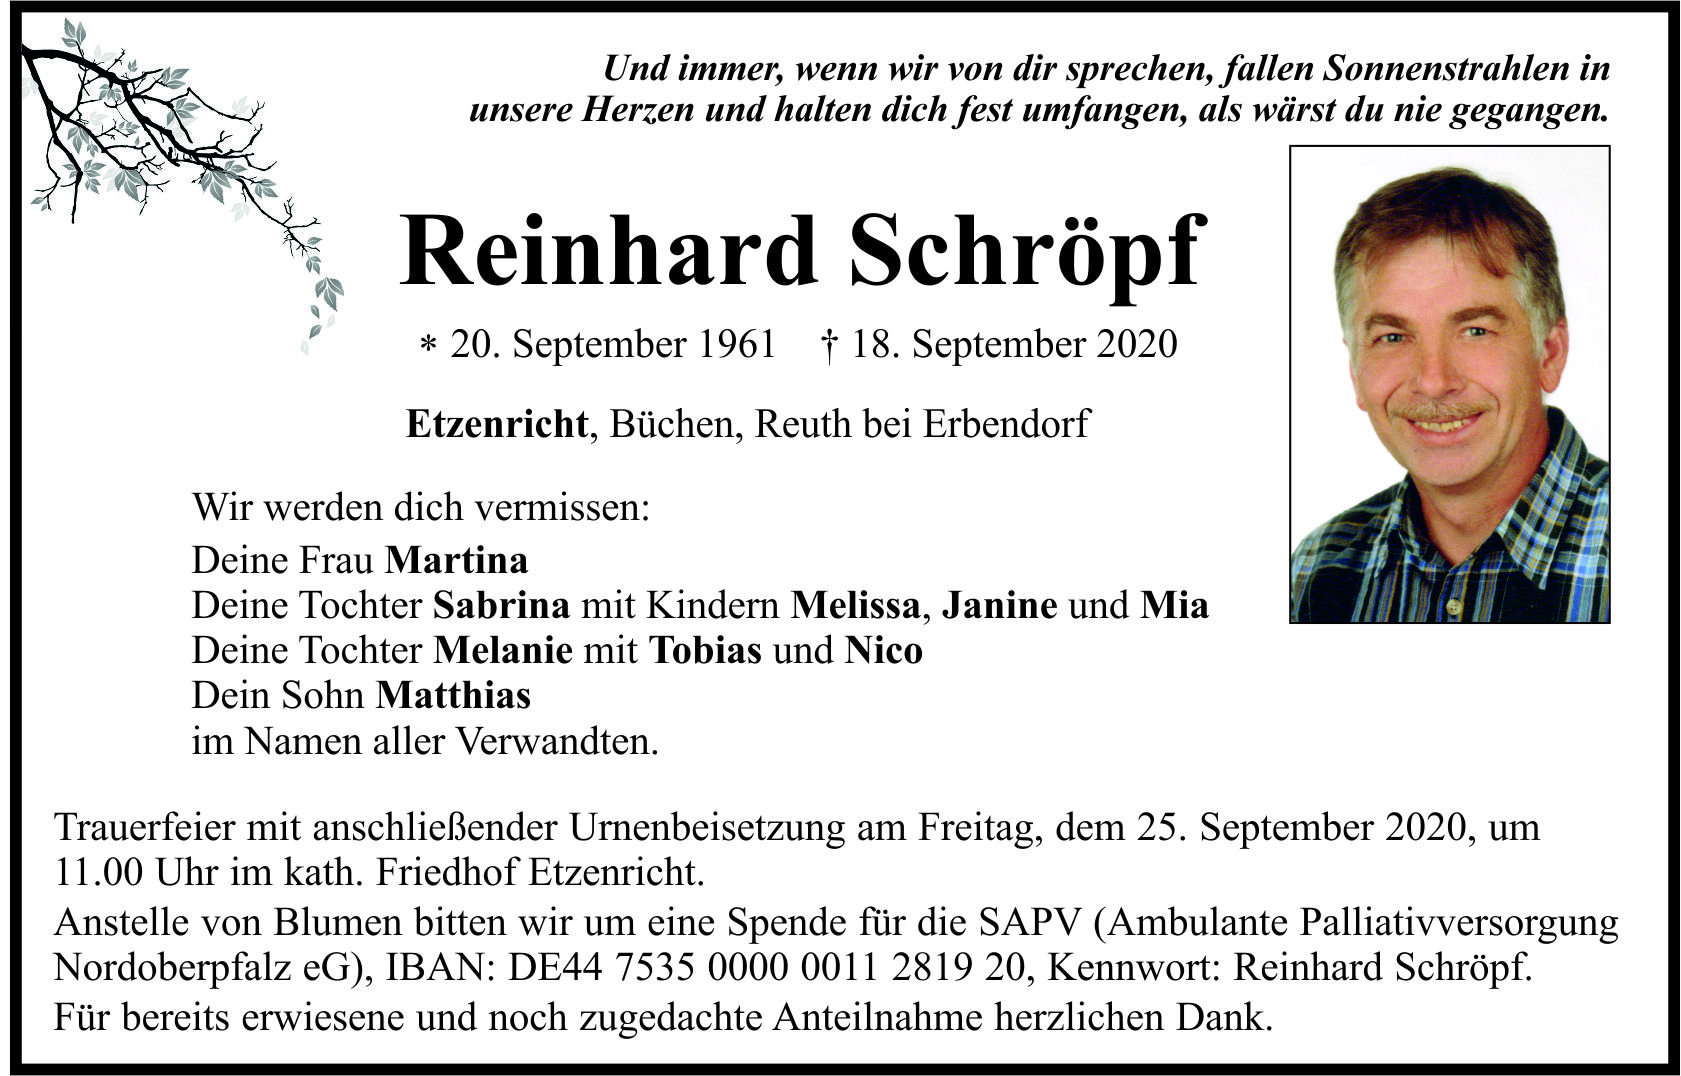 Traueranzeige Reinhard Schröpf, Etzenricht